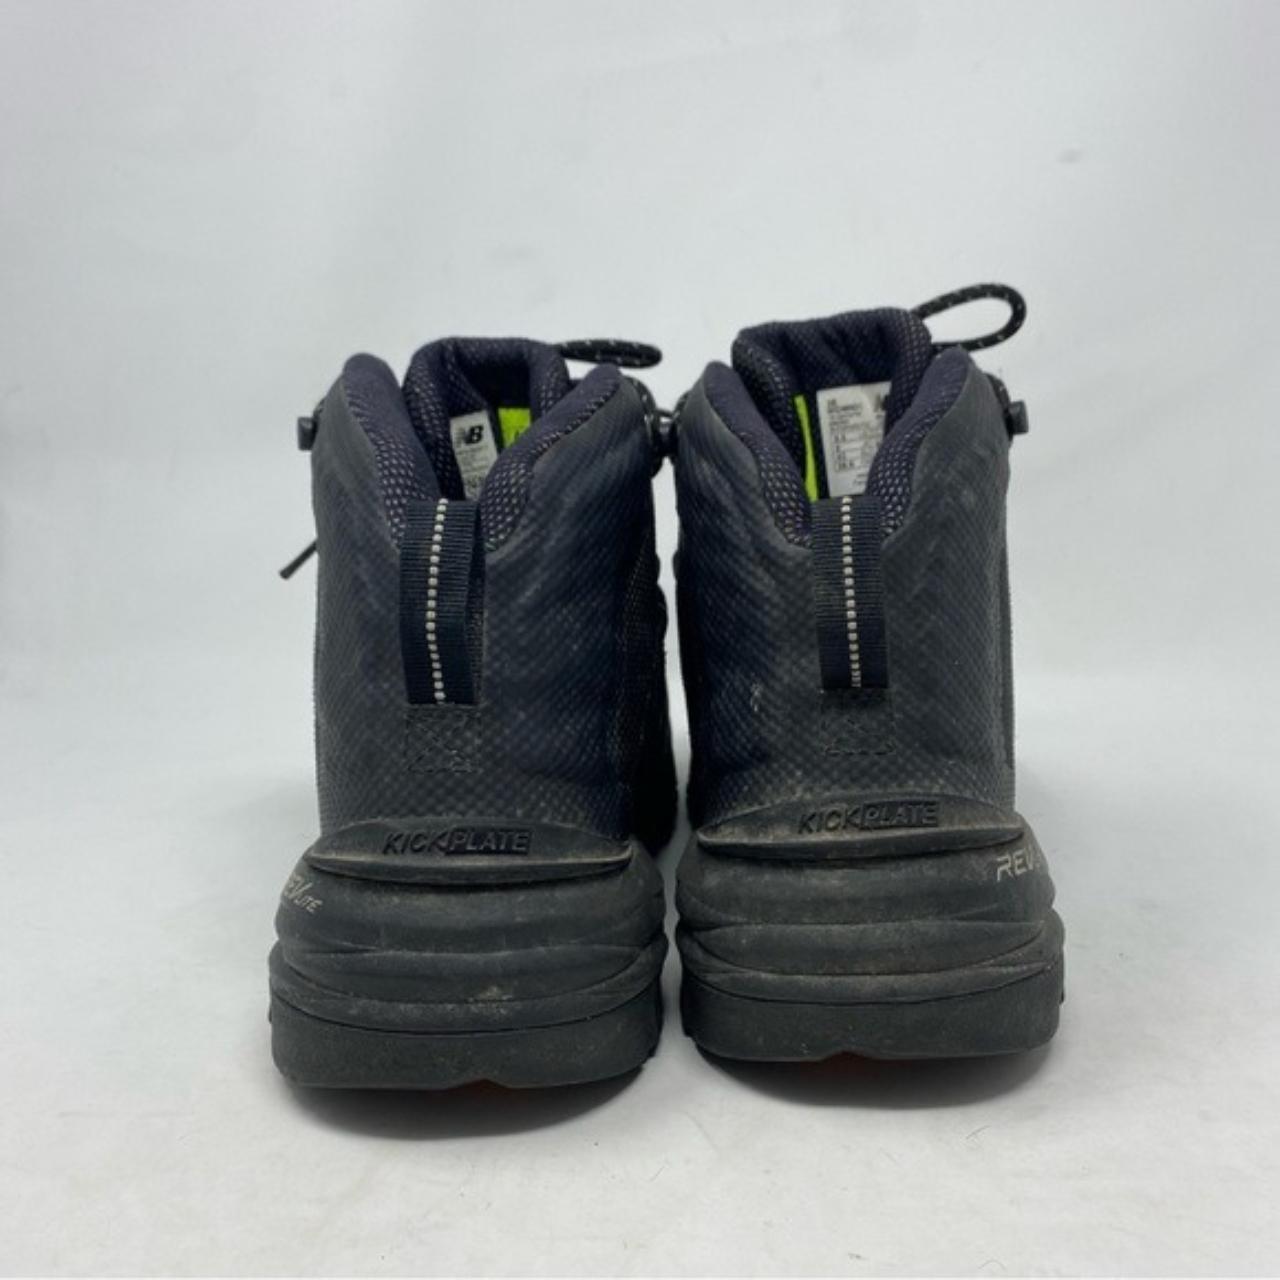 New Balance Men’s 989v1 Composite Toe Black Boots... - Depop